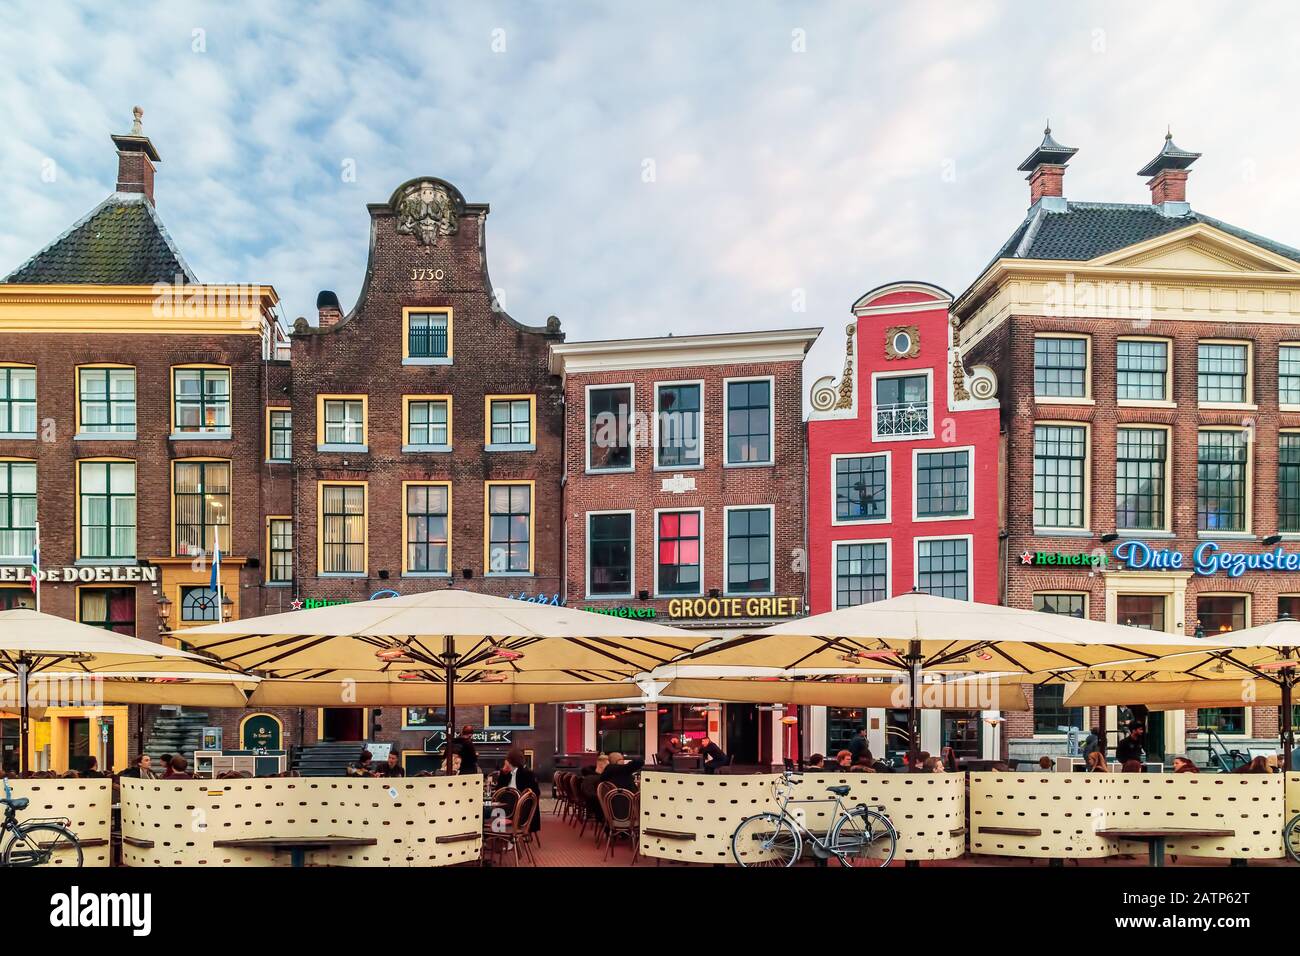 Groningen, PAYS-BAS - 2 NOVEMBRE 2017 : pubs et restaurants sur la célèbre place centrale Grote Markt à Groningen, Pays-Bas Banque D'Images